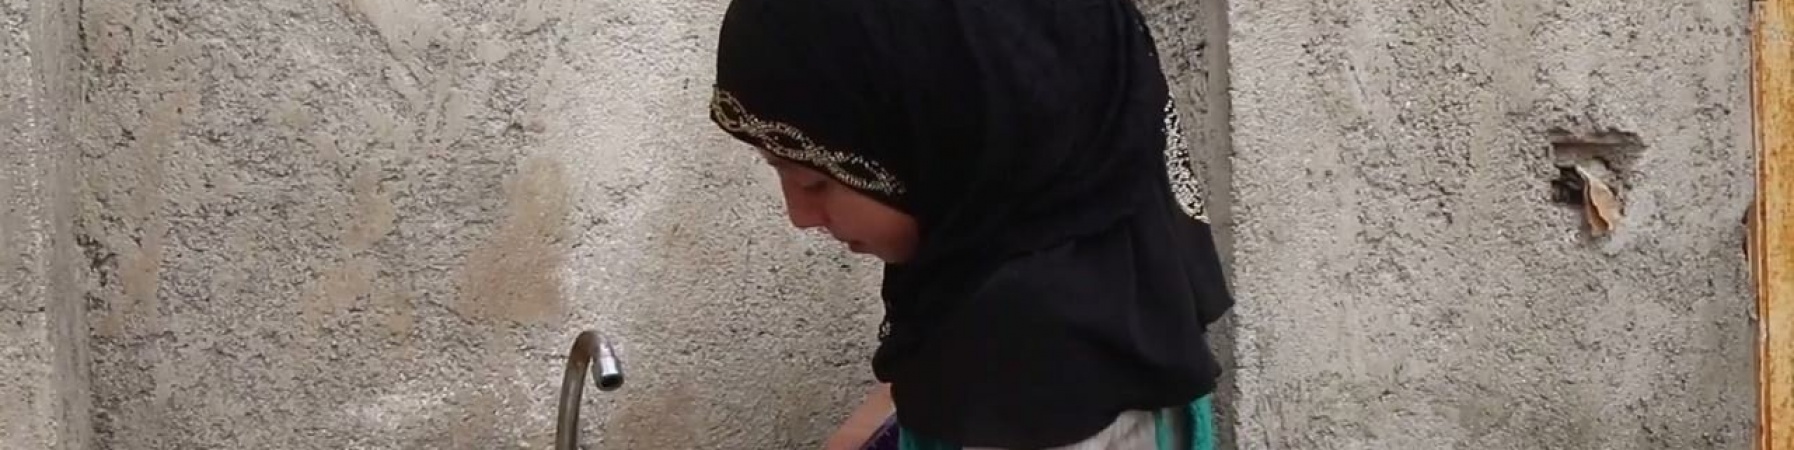 Bambina siriana di profilo vera il sapone sulle mani prima di lavarle al lavandino di fronte a lei.